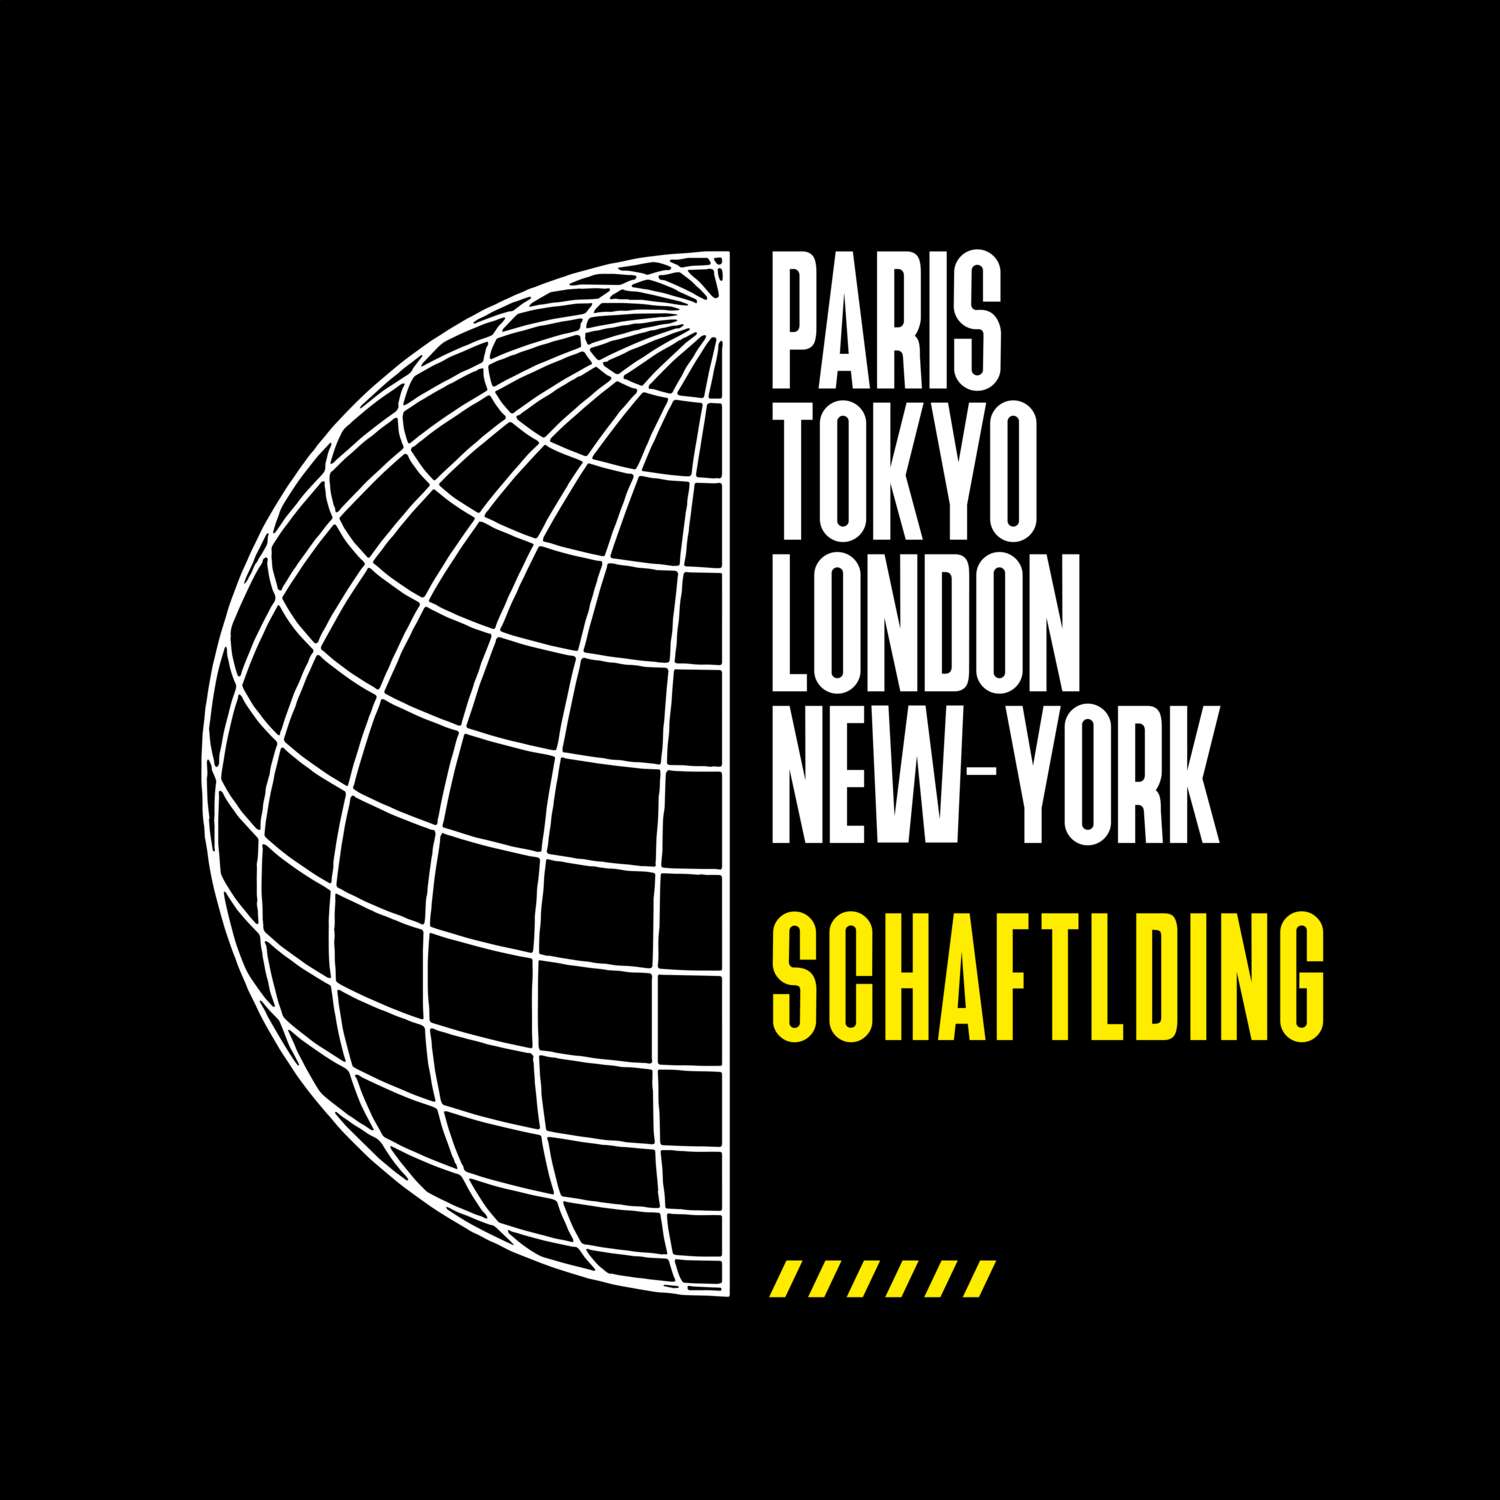 Schaftlding T-Shirt »Paris Tokyo London«